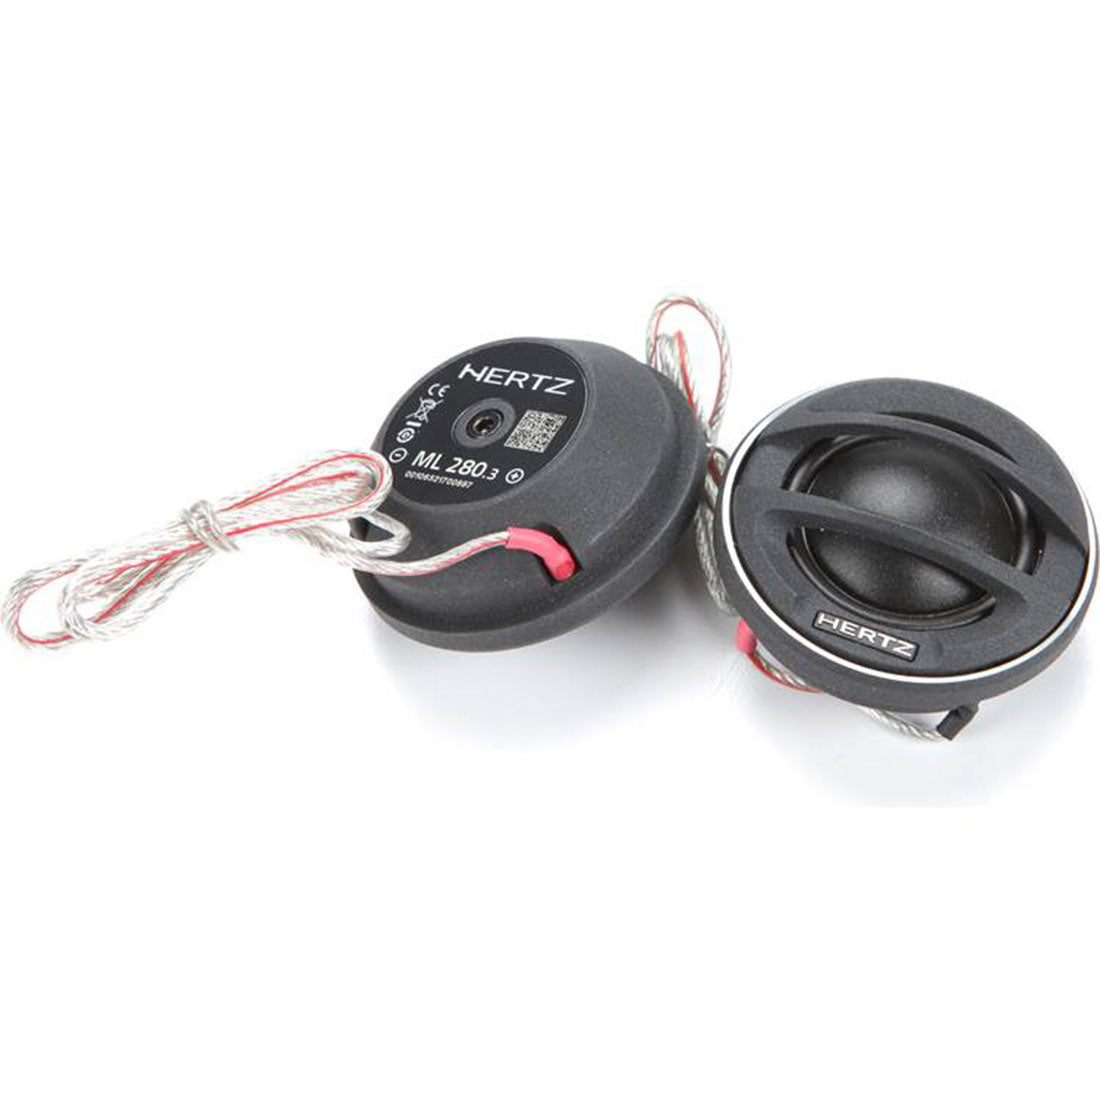 Hertz MPK1650.3 6.5" Component Speaker System